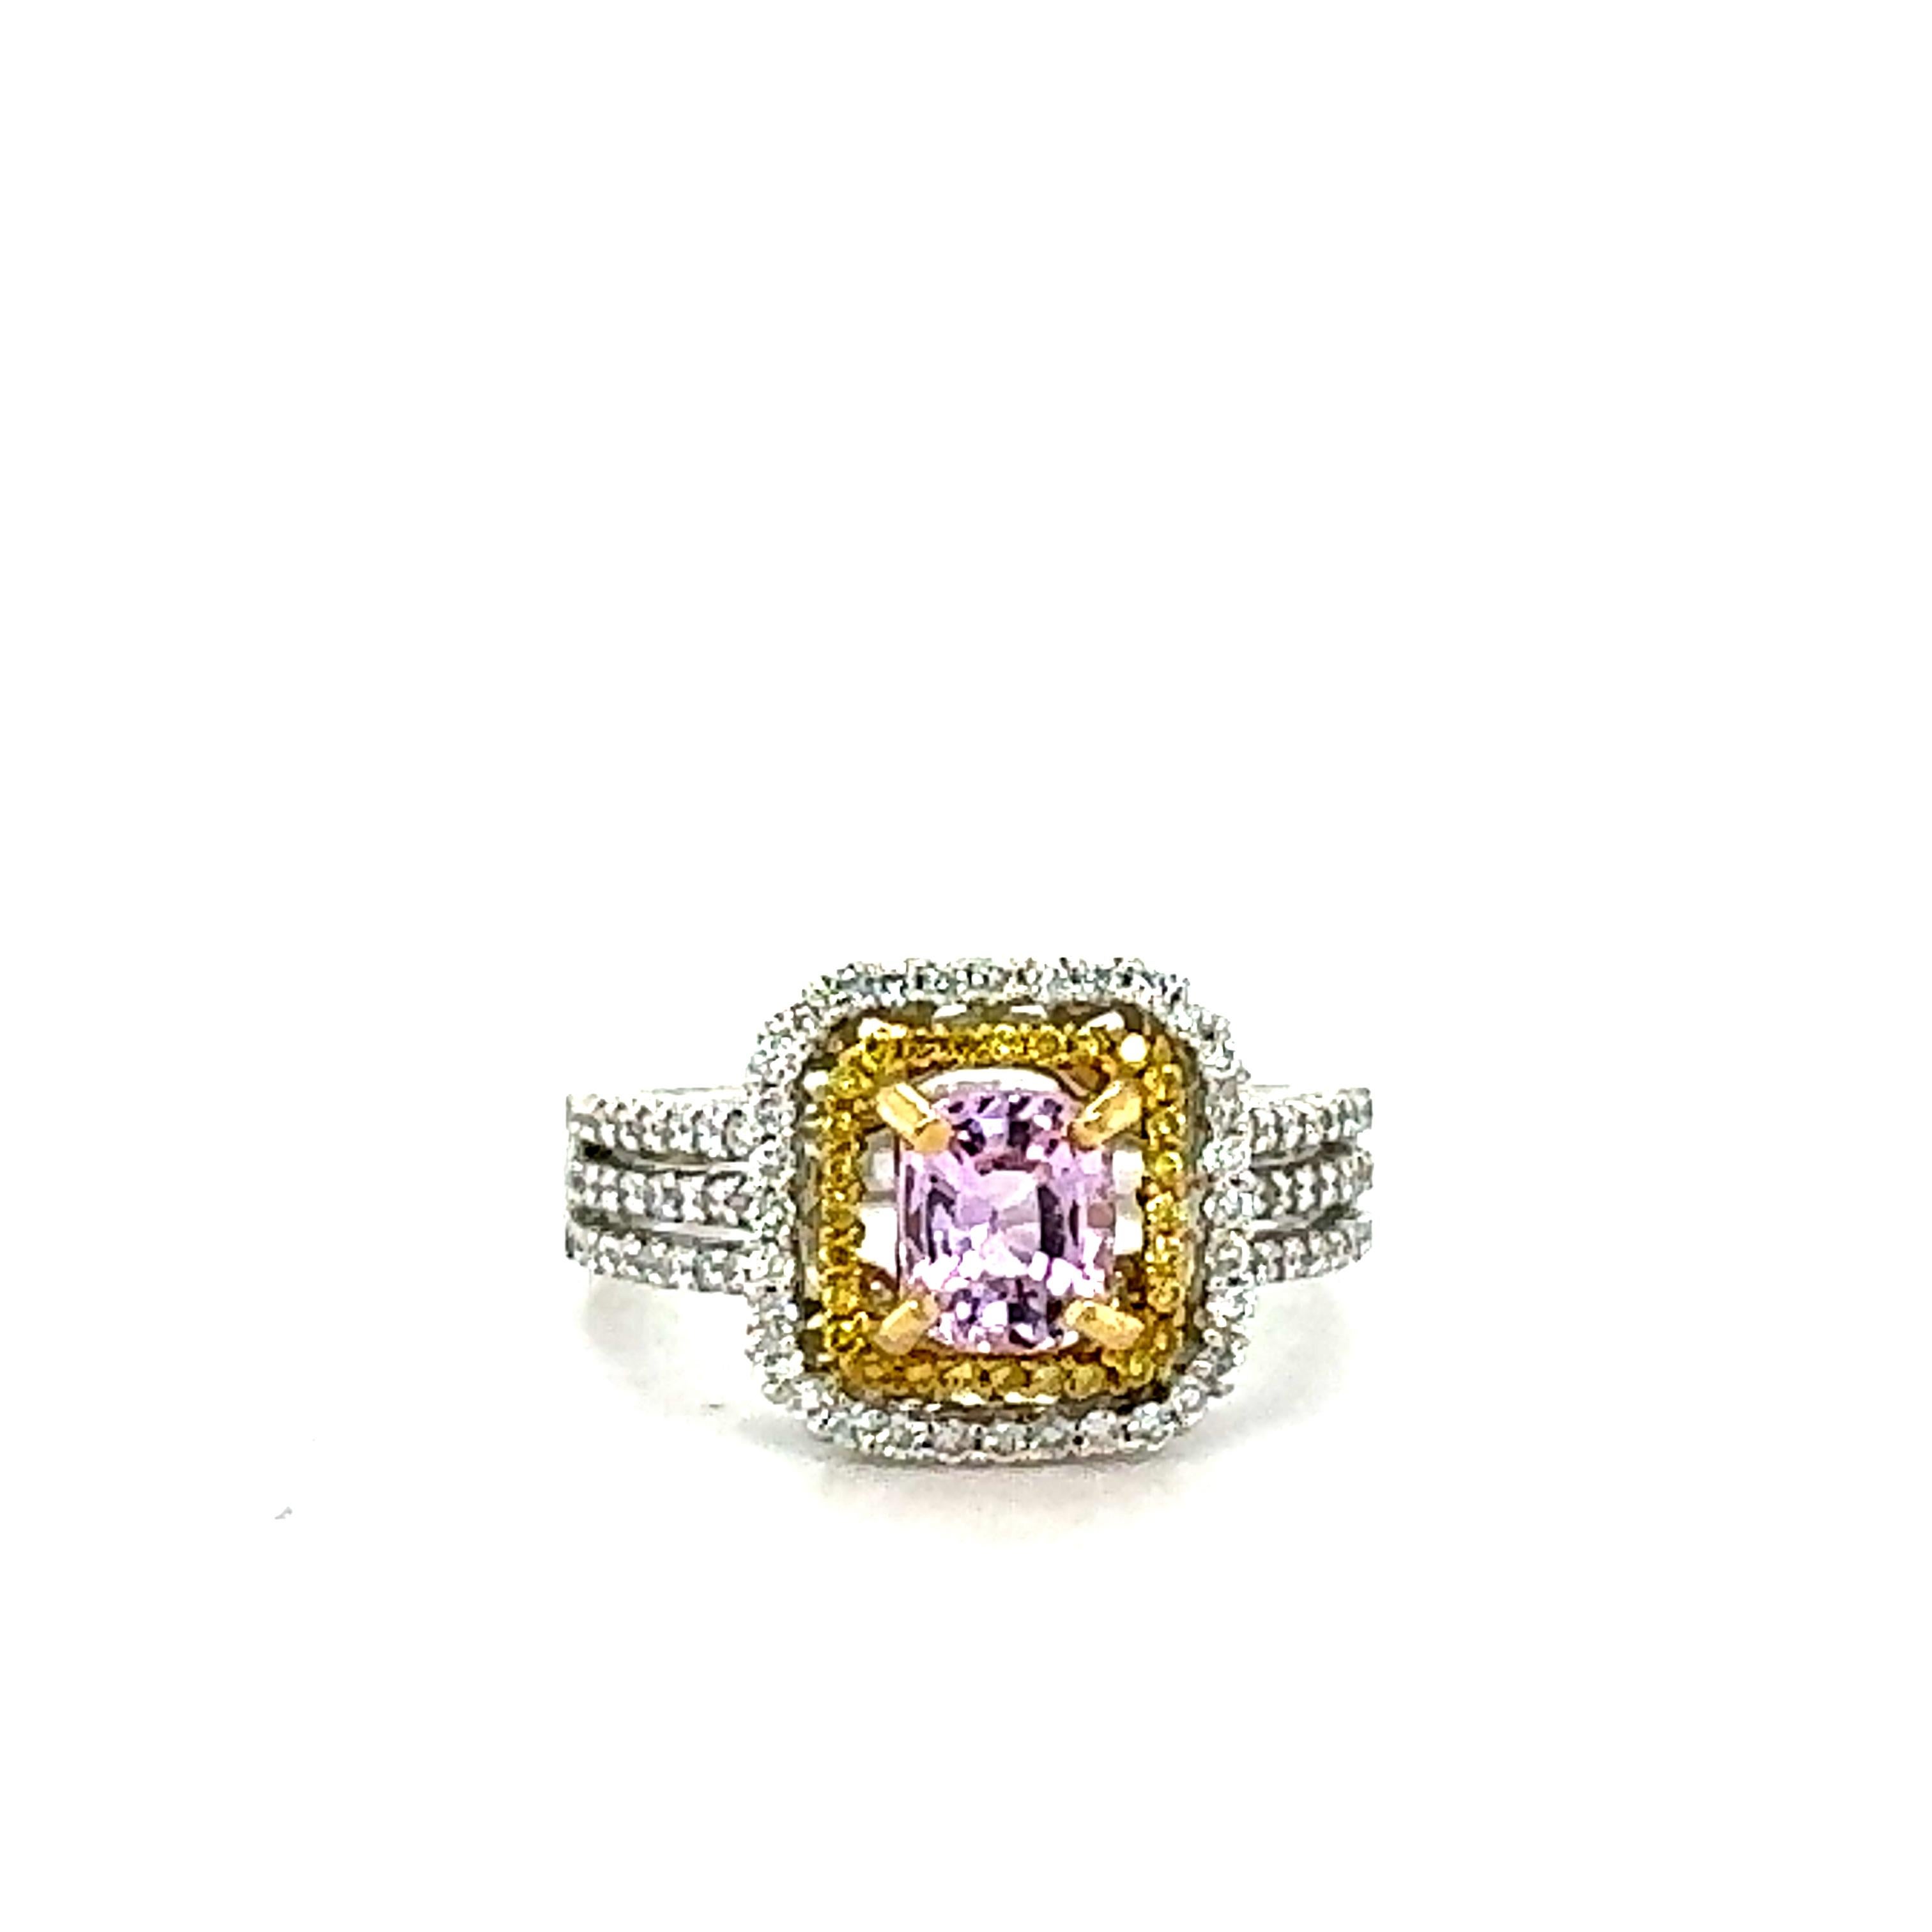 1,53 Karat Natürlicher Rosa Saphir Diamant Weißgold Verlobungsring

Einfach der eleganteste und schönste Verlobungs- oder Ehering mit rosa Saphiren und gelben und weißen Diamanten!

Das Zentrum ist ein natürlicher unerhitzter rosa Saphir im